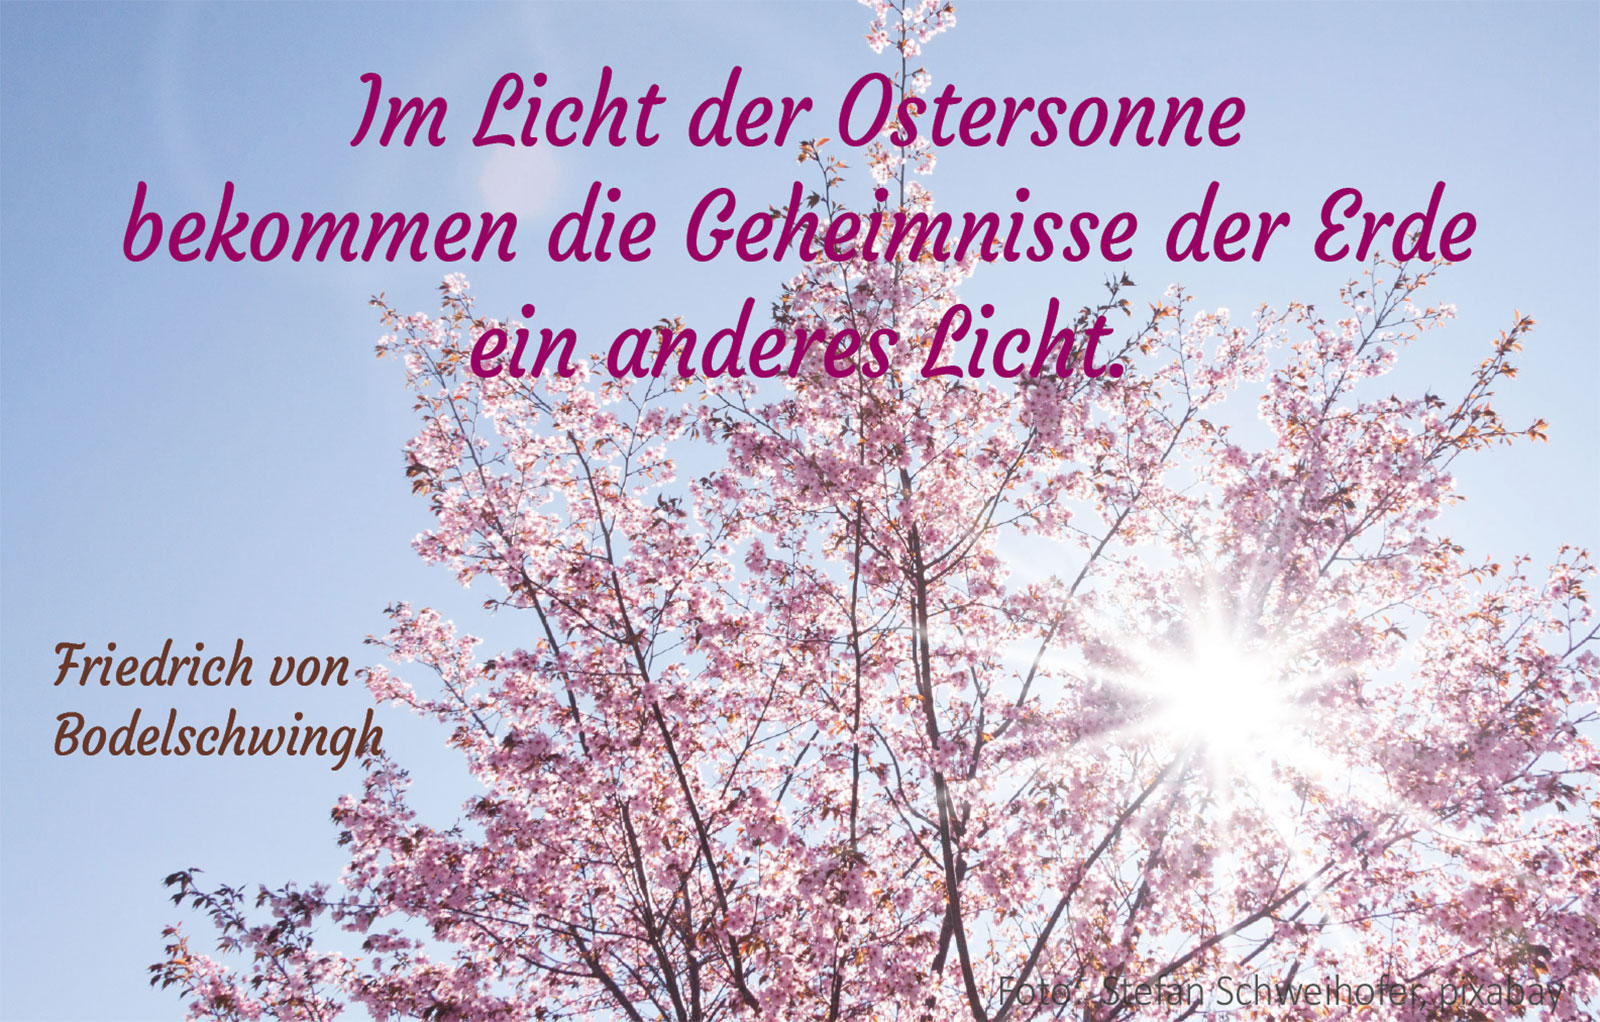 Im Licht der Ostersonne (Blühender Baum, Foto: Stefan Schweihofer, Pixabay)